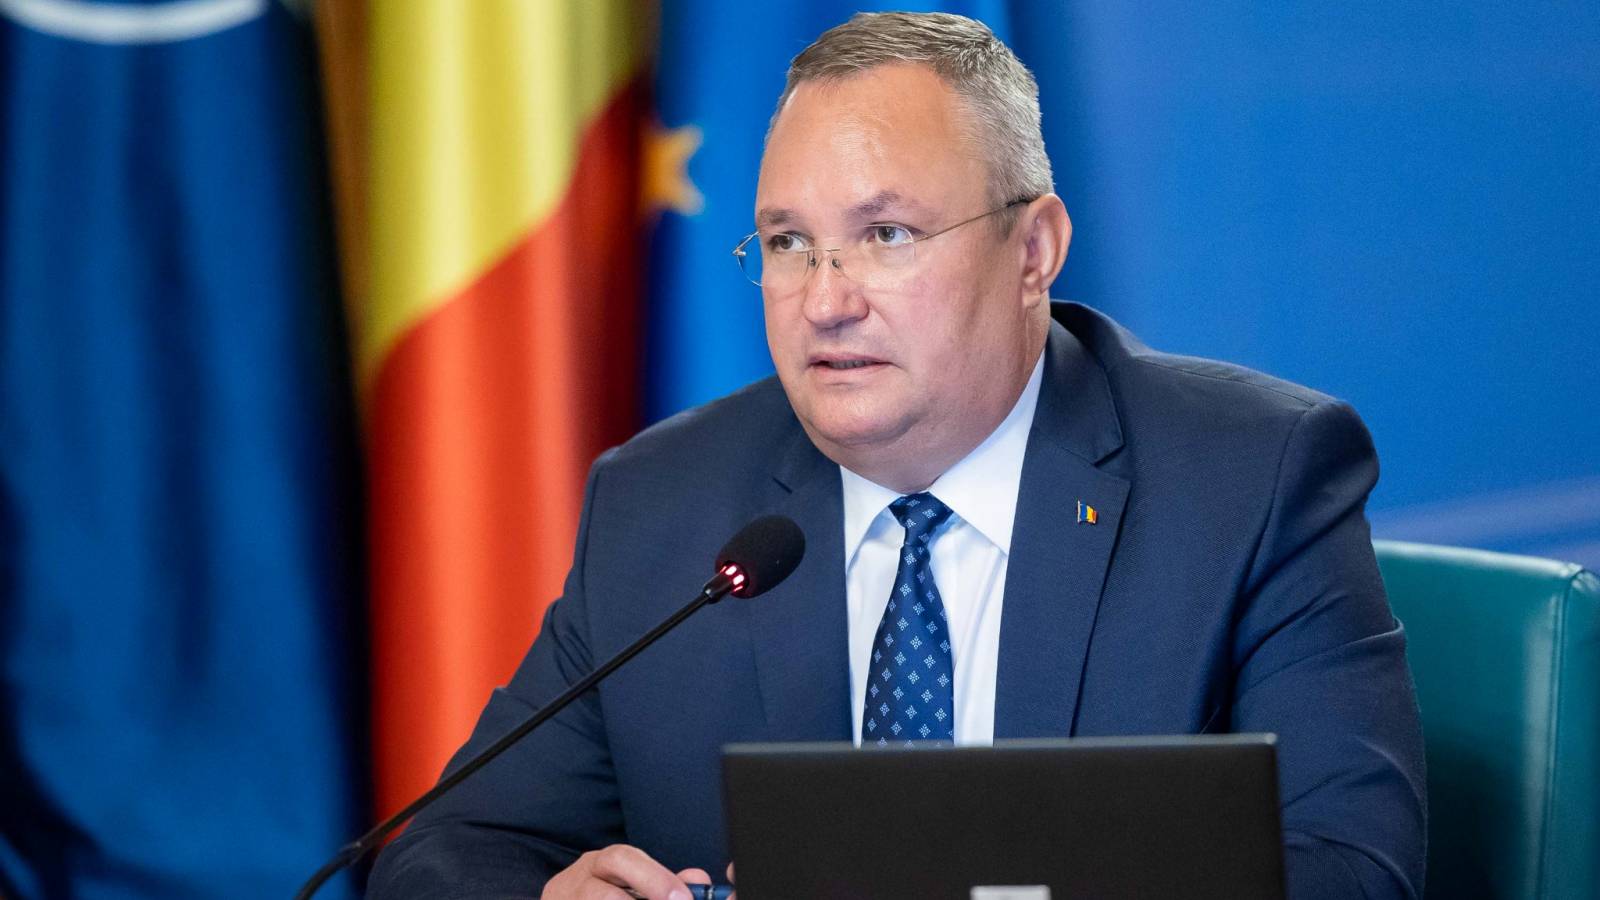 Nicolae Ciuca drøftede udvidelsen af ​​det strategiske partnerskab med Moldovas premierminister